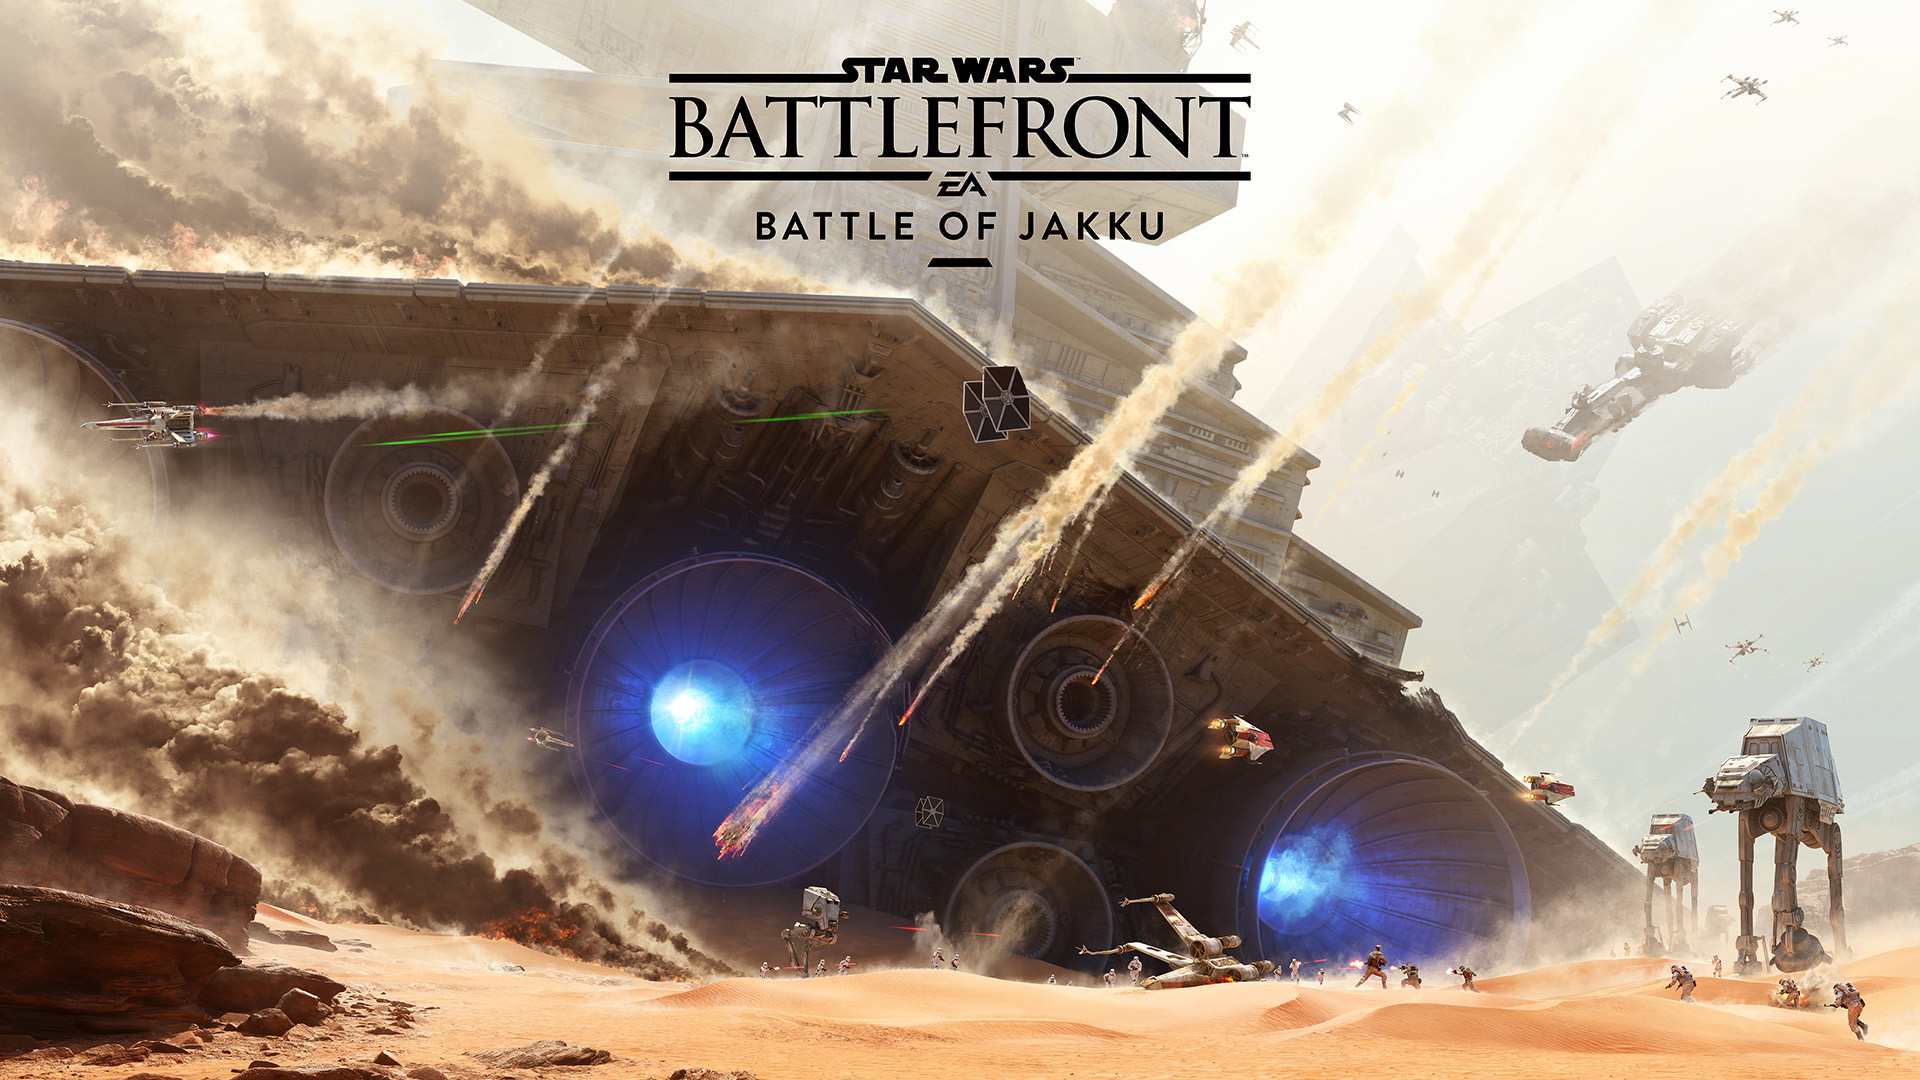 1920x1080 Werft einen ersten Blick auf die Schlacht von Jakku in Star Warsâ¢  Battlefrontâ¢ - Star Wars - Offizielle EA-Website